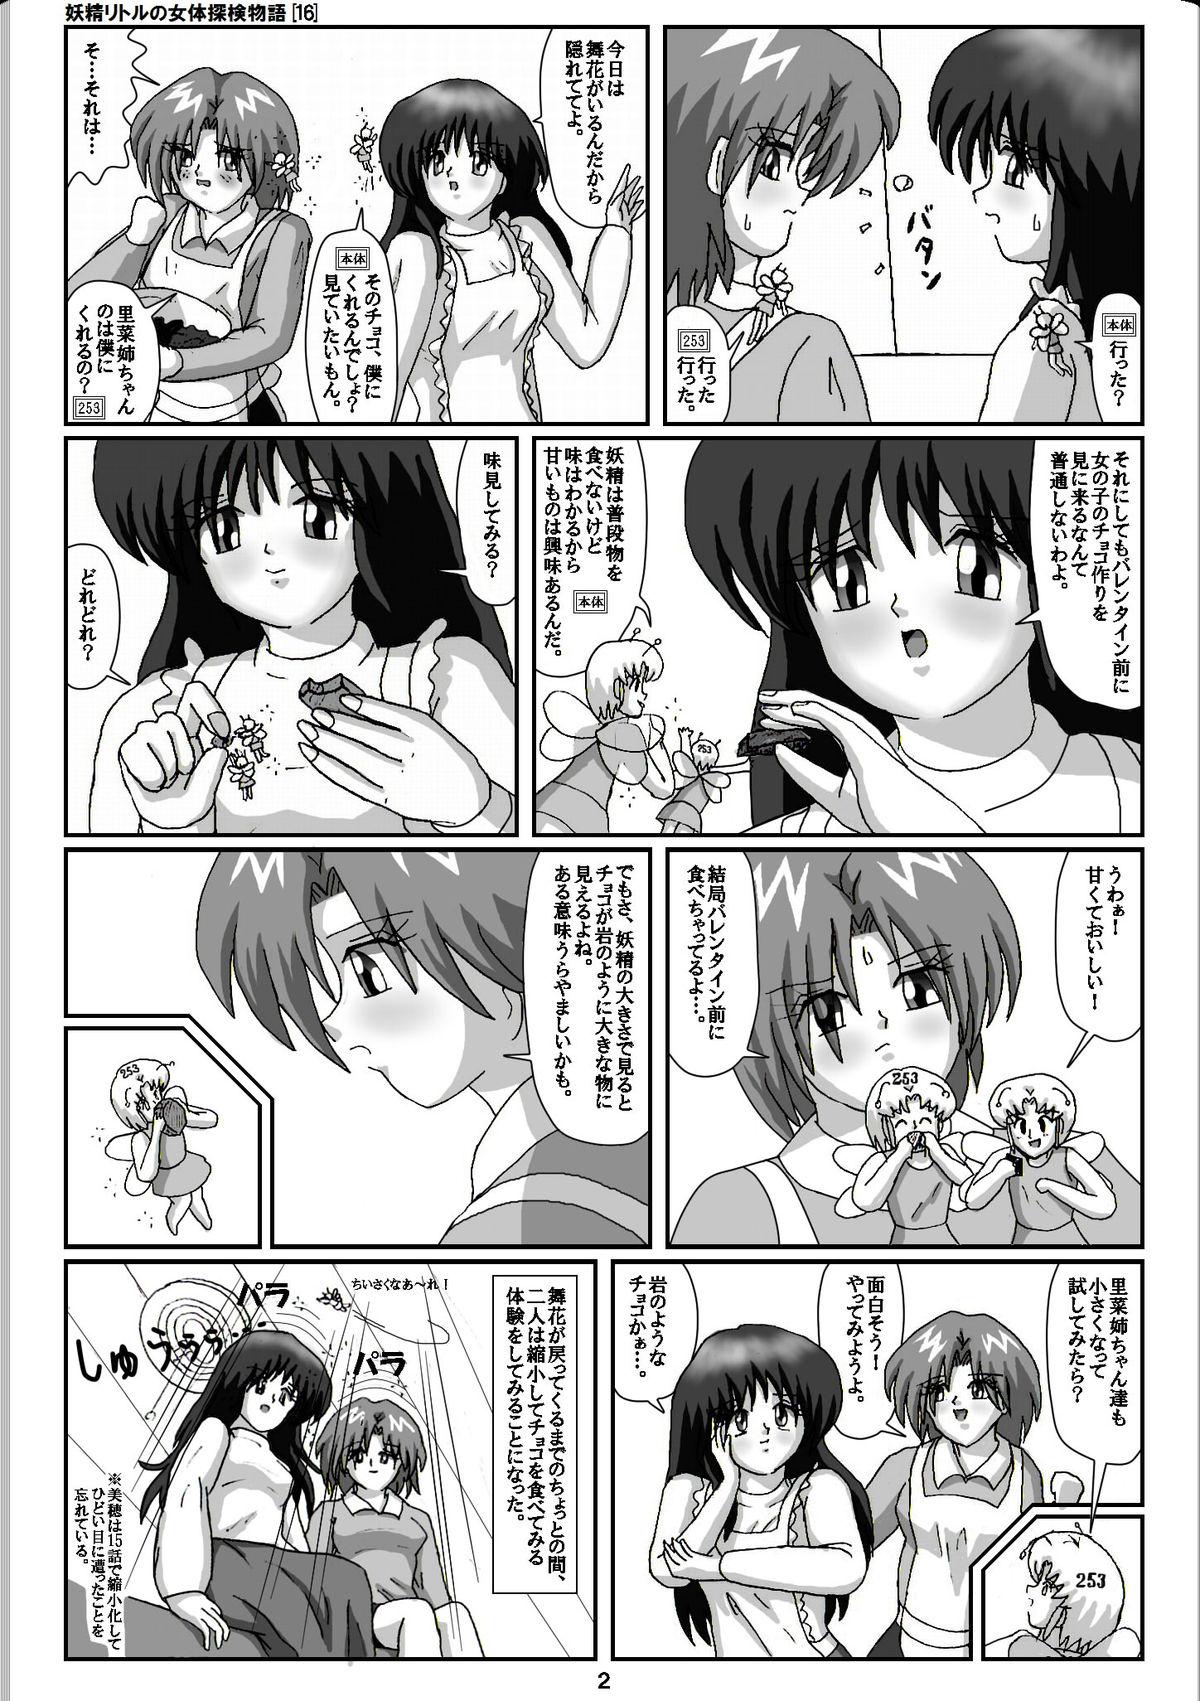 Vagina Yousei Little no Nyotai Tanken Monogatari Gets - Page 2